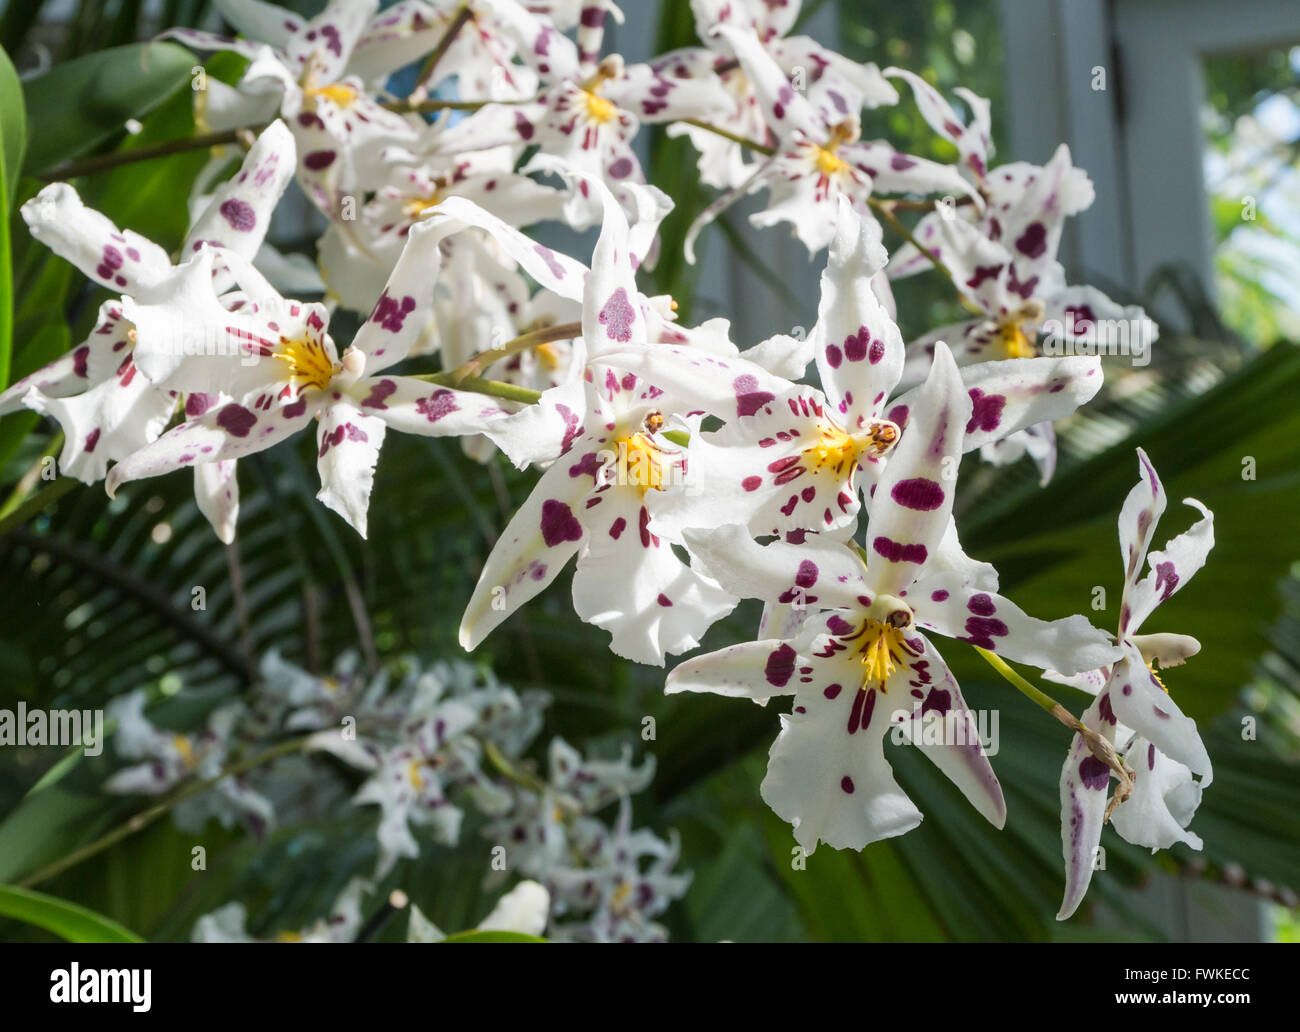 Beallara Bllra. Tropic Lily 'Hilo Spaceship' orchid (Orchidaceae) avec du blanc et violet fleurs tachées Banque D'Images